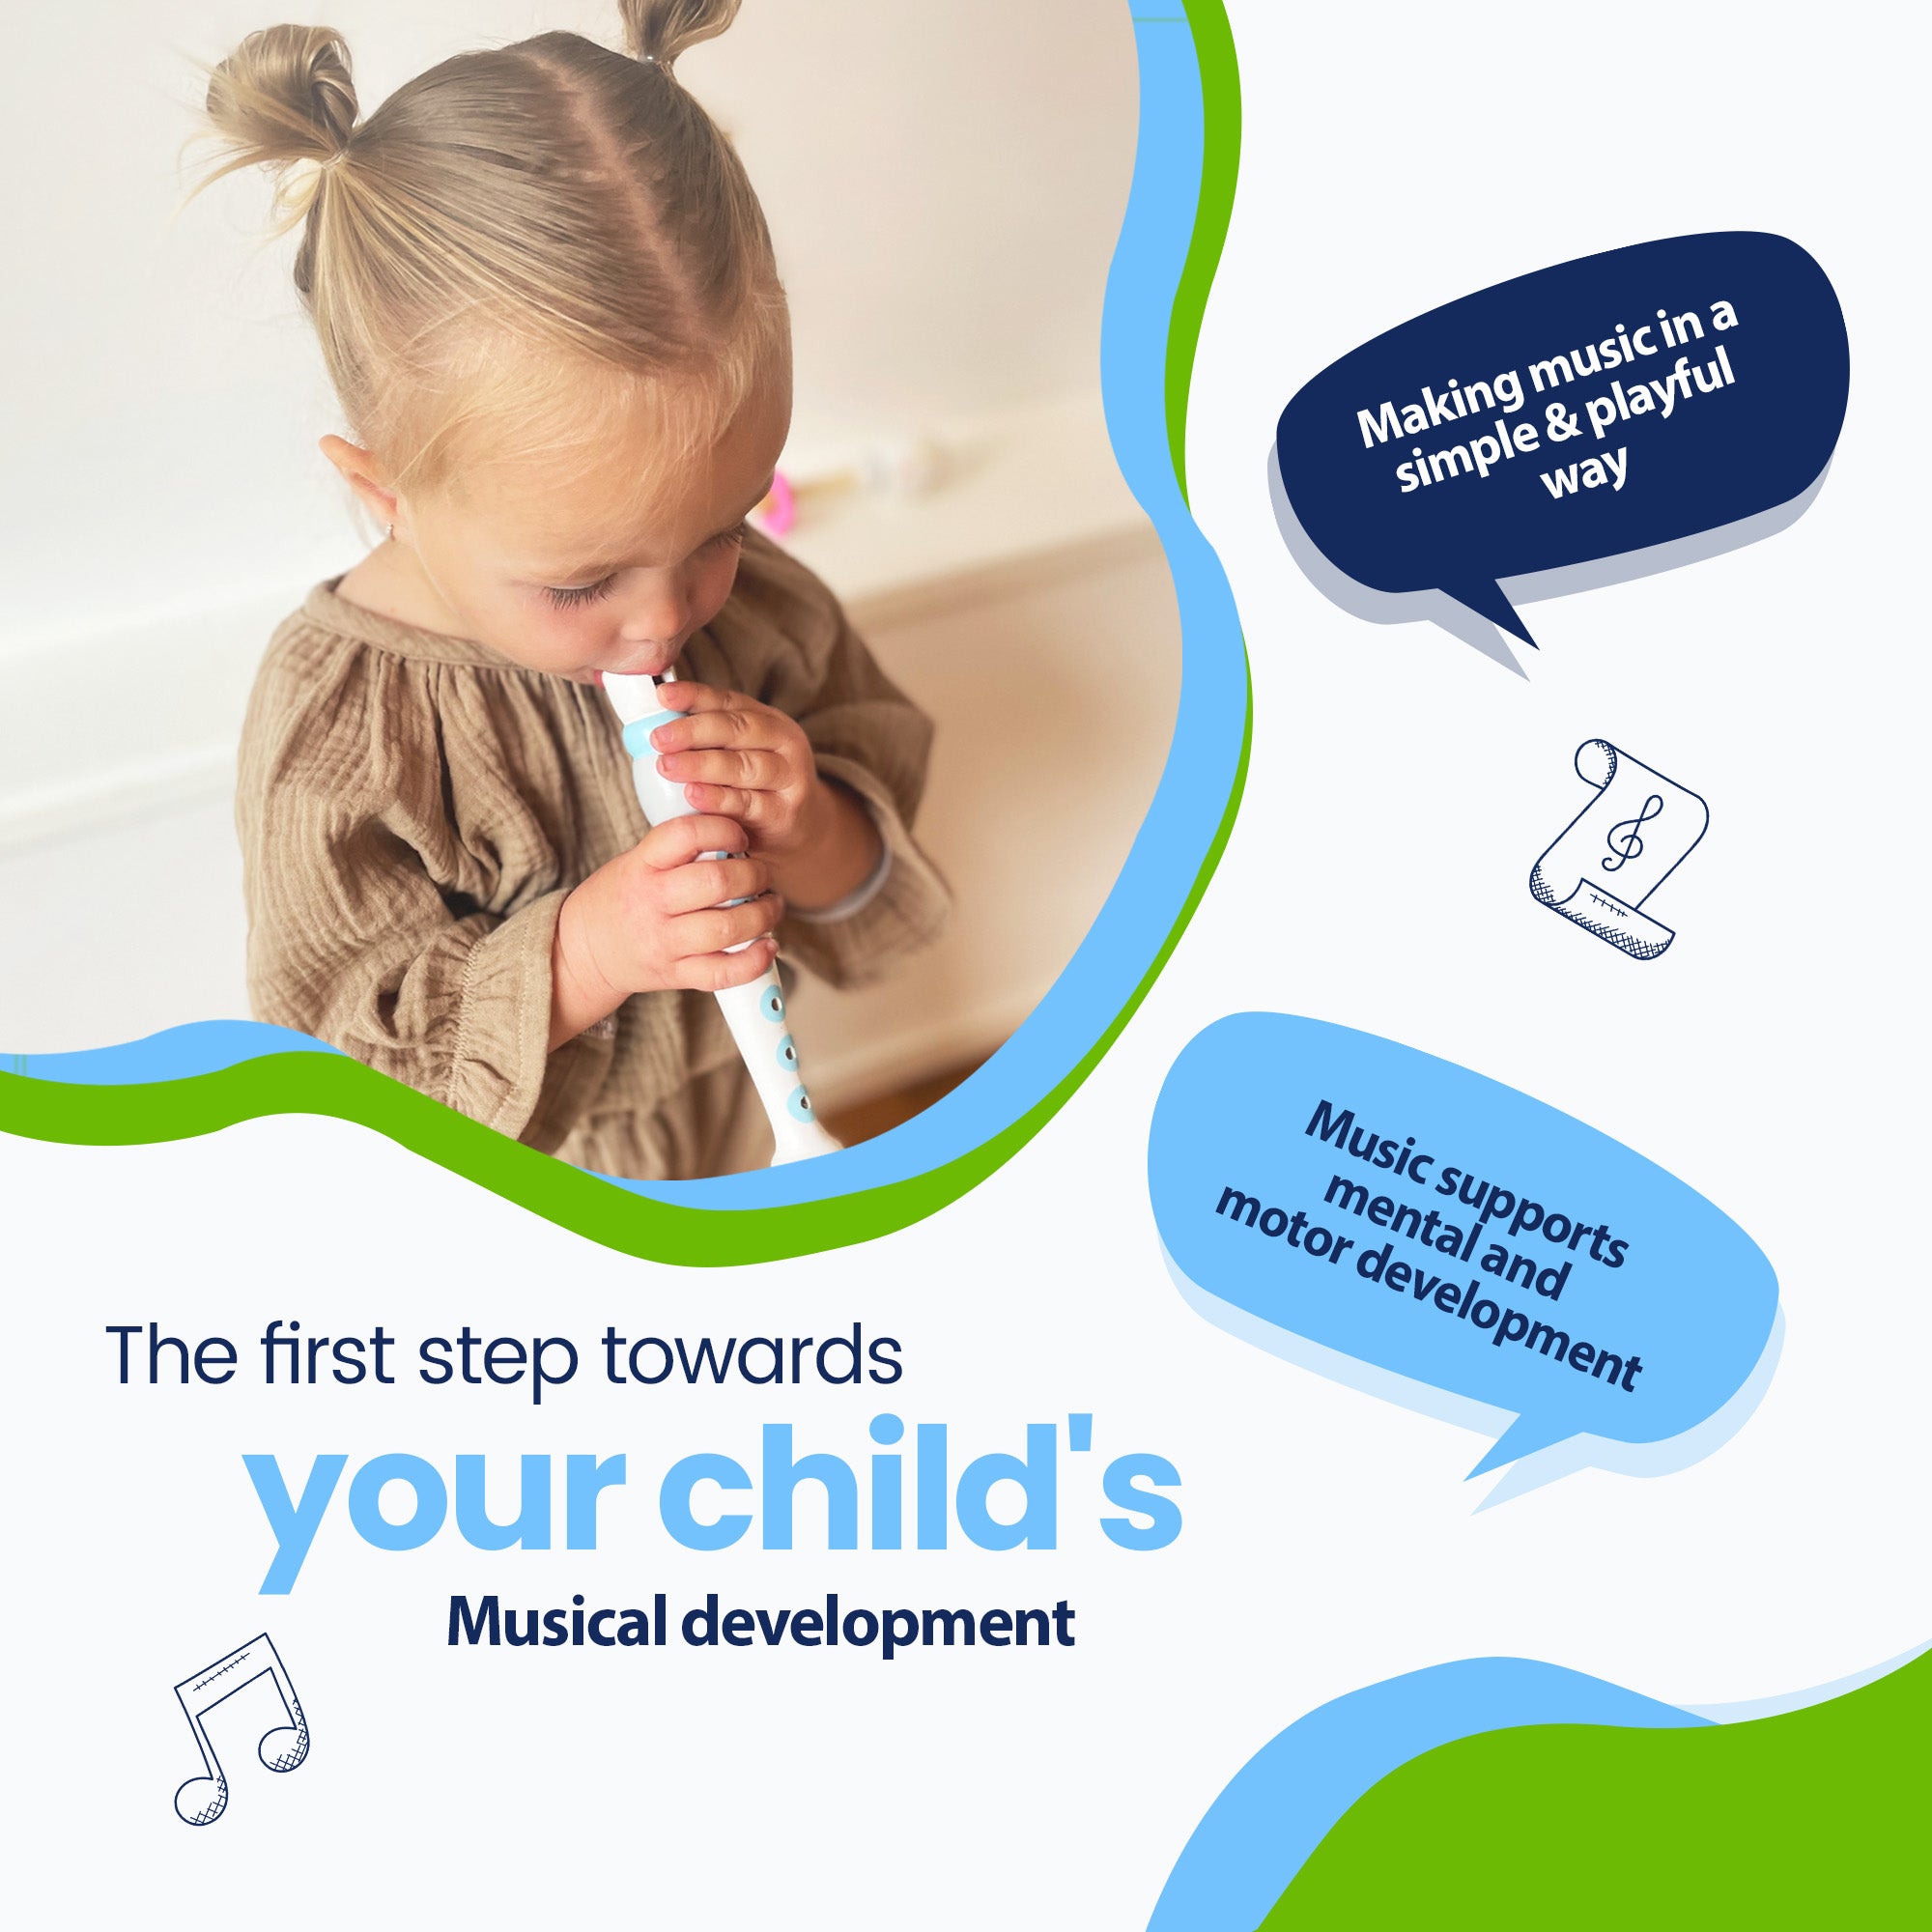 Det första steget mot ditt barns musikaliska utveckling - Att göra musik på ett enkelt och lekfullt sätt - Musik stöder mental och motorisk utveckling